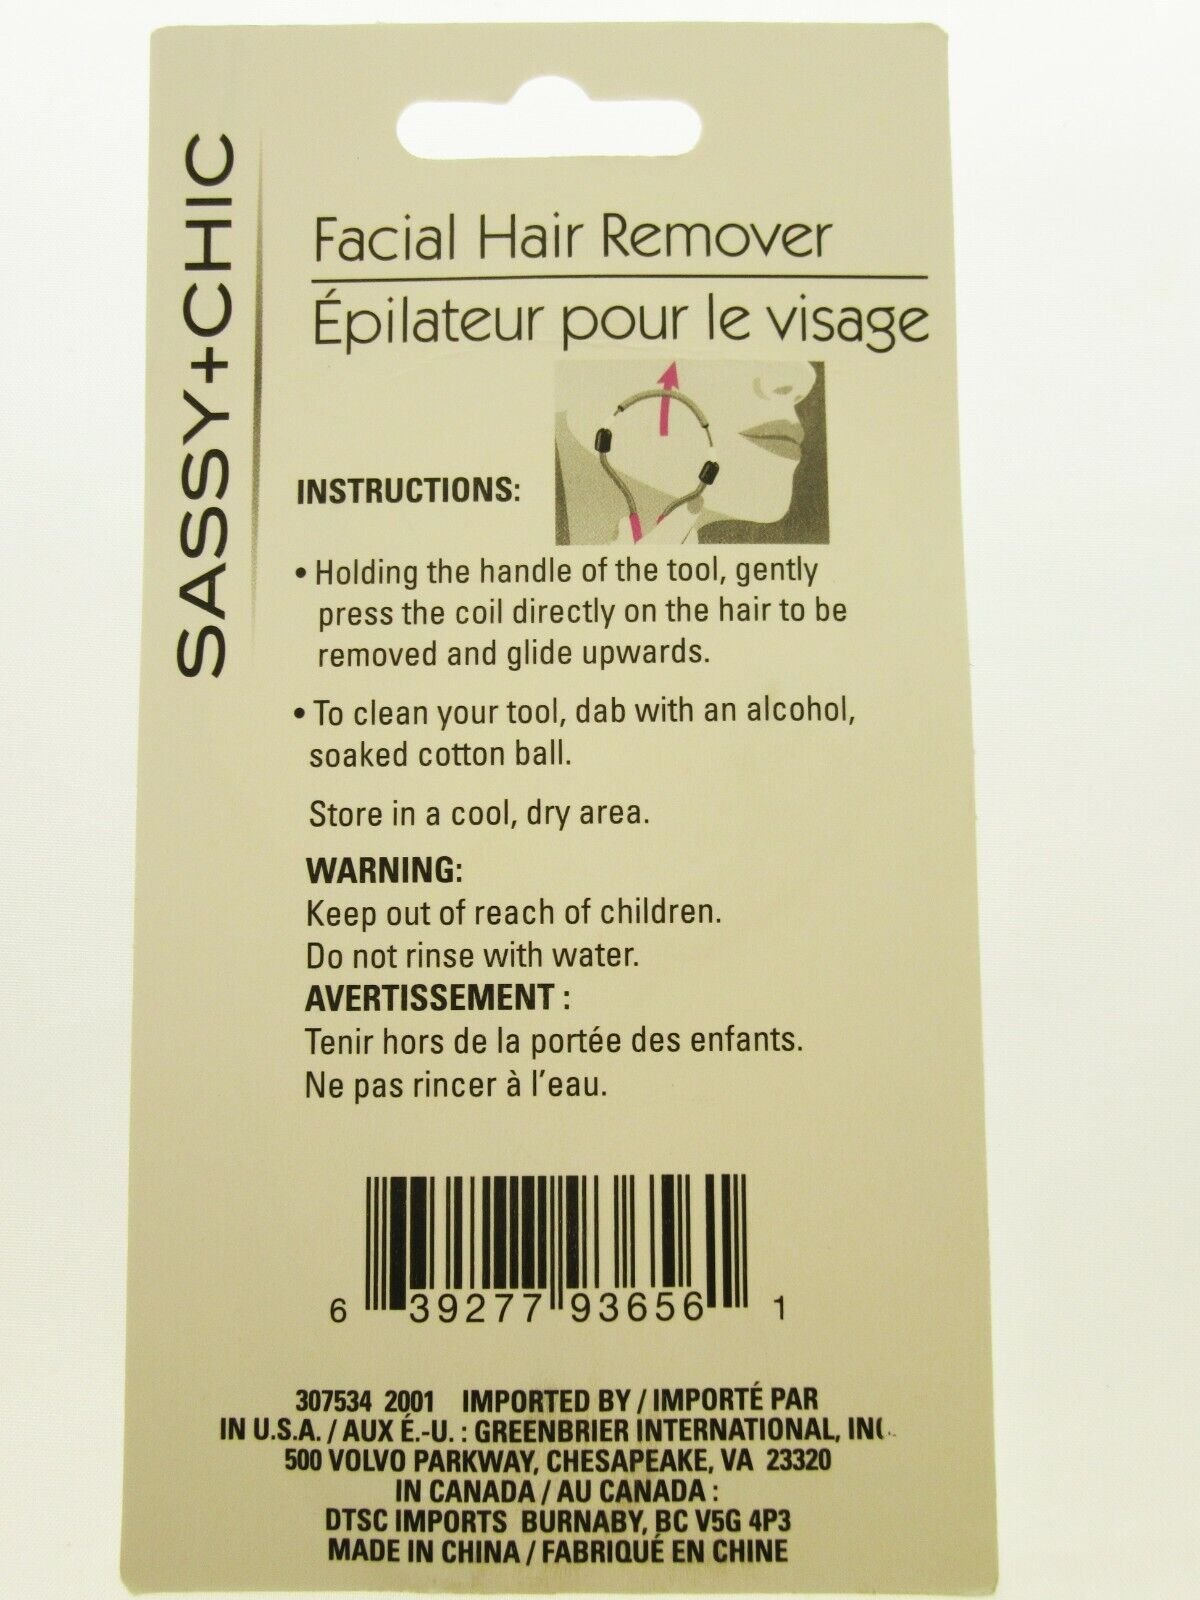 Facial Hair Remover Sassy-Chic Manual Epilator - Easily Remove Peach Fuzz